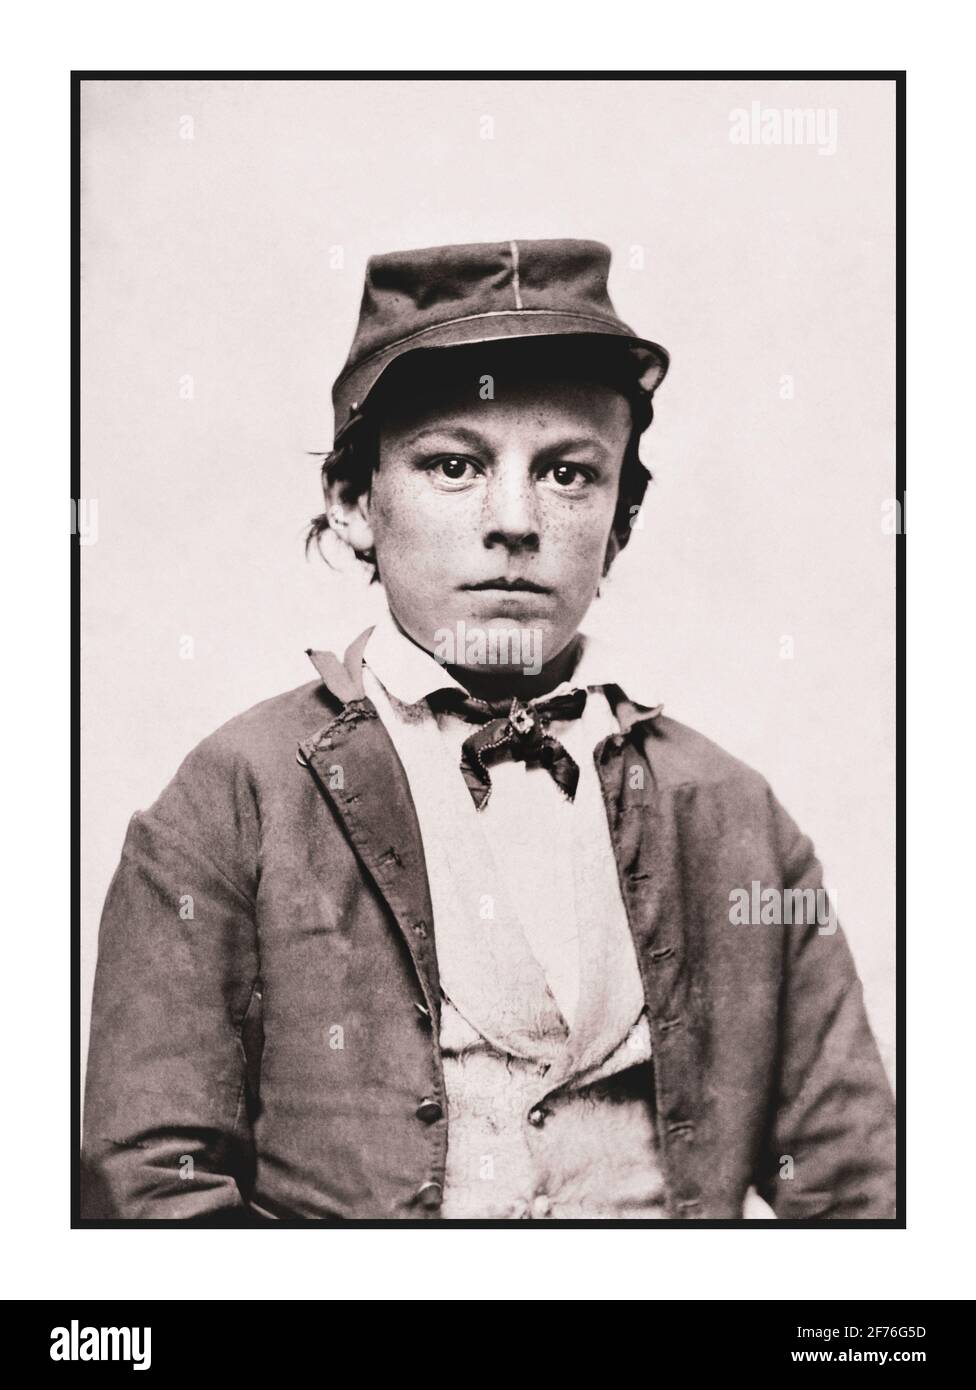 American Civil war junger Teenager-Soldat in der Uniform der Infanterie der Confederate States Army zeigt einen jungen Soldaten, möglicherweise einen Schlagzeugjungen. Datum 1861-1865 Tinnyp, Ferrotyp Stockfoto